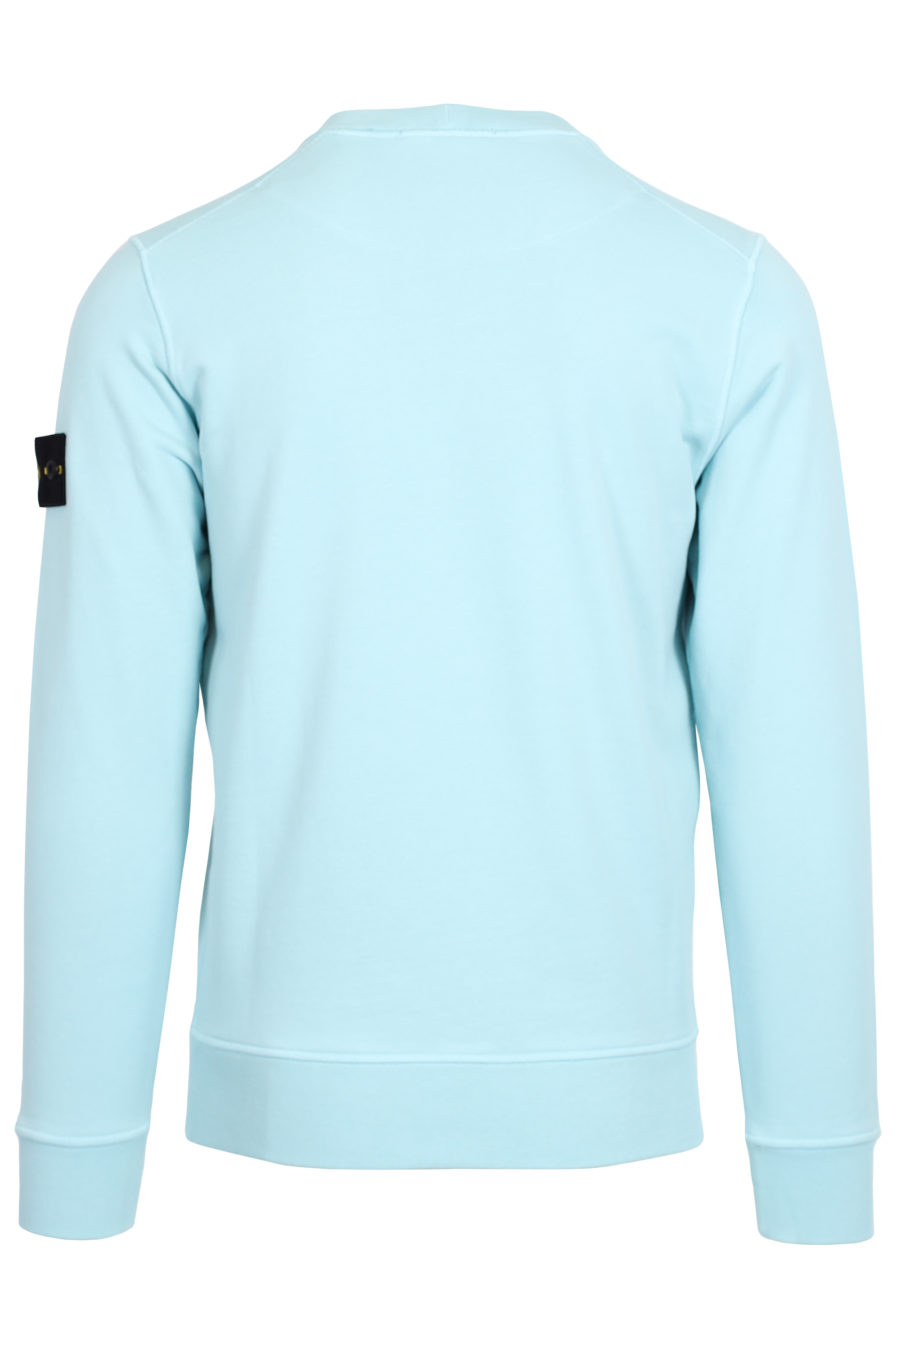 Blaues Sweatshirt mit Aufnäher - IMG 3654